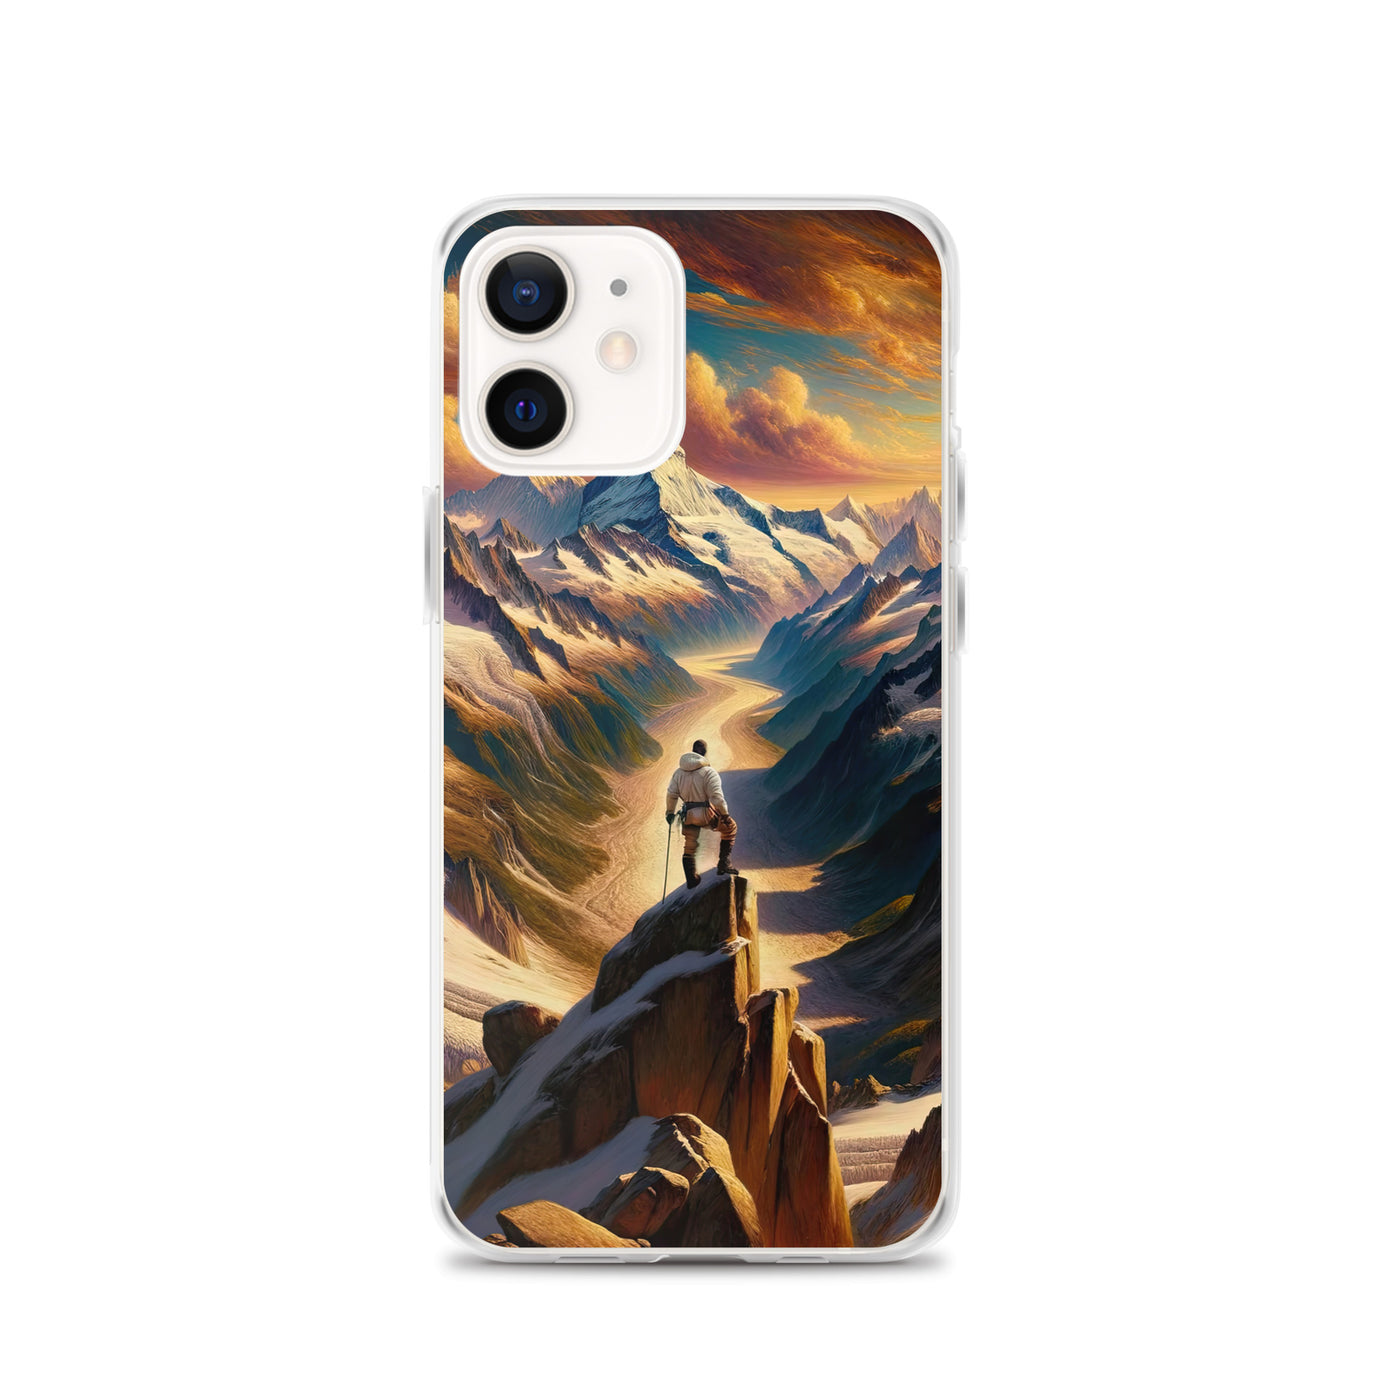 Ölgemälde eines Wanderers auf einem Hügel mit Panoramablick auf schneebedeckte Alpen und goldenen Himmel - iPhone Schutzhülle (durchsichtig) wandern xxx yyy zzz iPhone 12